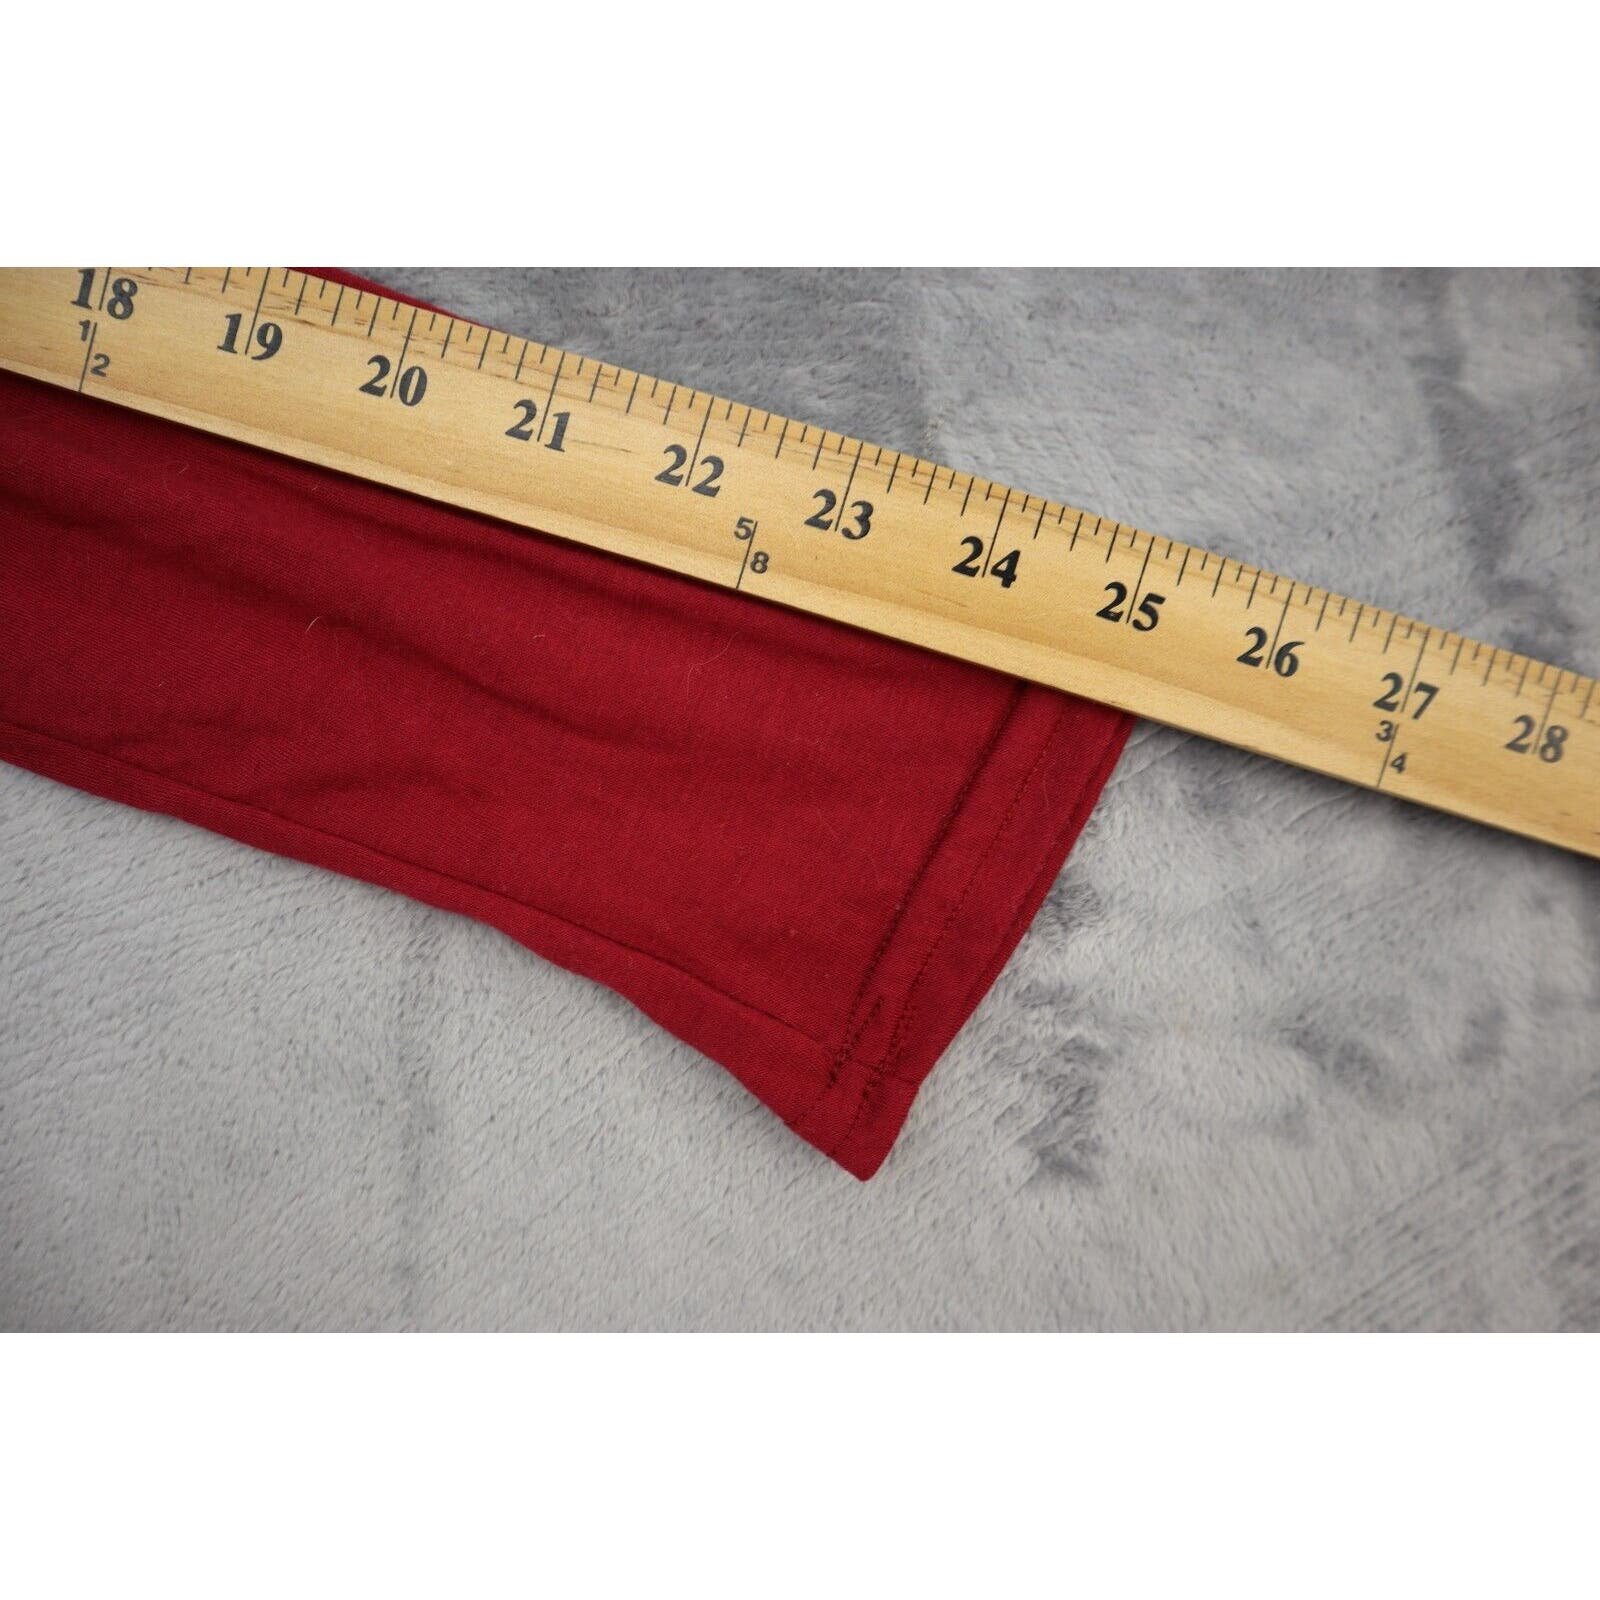 Popular Womens Dress Medium Red Lightweight Casual Long Sleeve Maxi Skirt A-Line phhdVYb5U Great